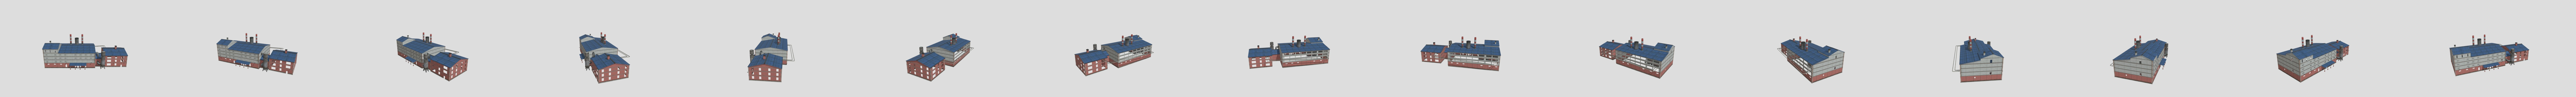 Ice Scream 3: Rod's Factory - Download Free 3D model by EWTube0 (@EWTube0)  [bb66a1e]